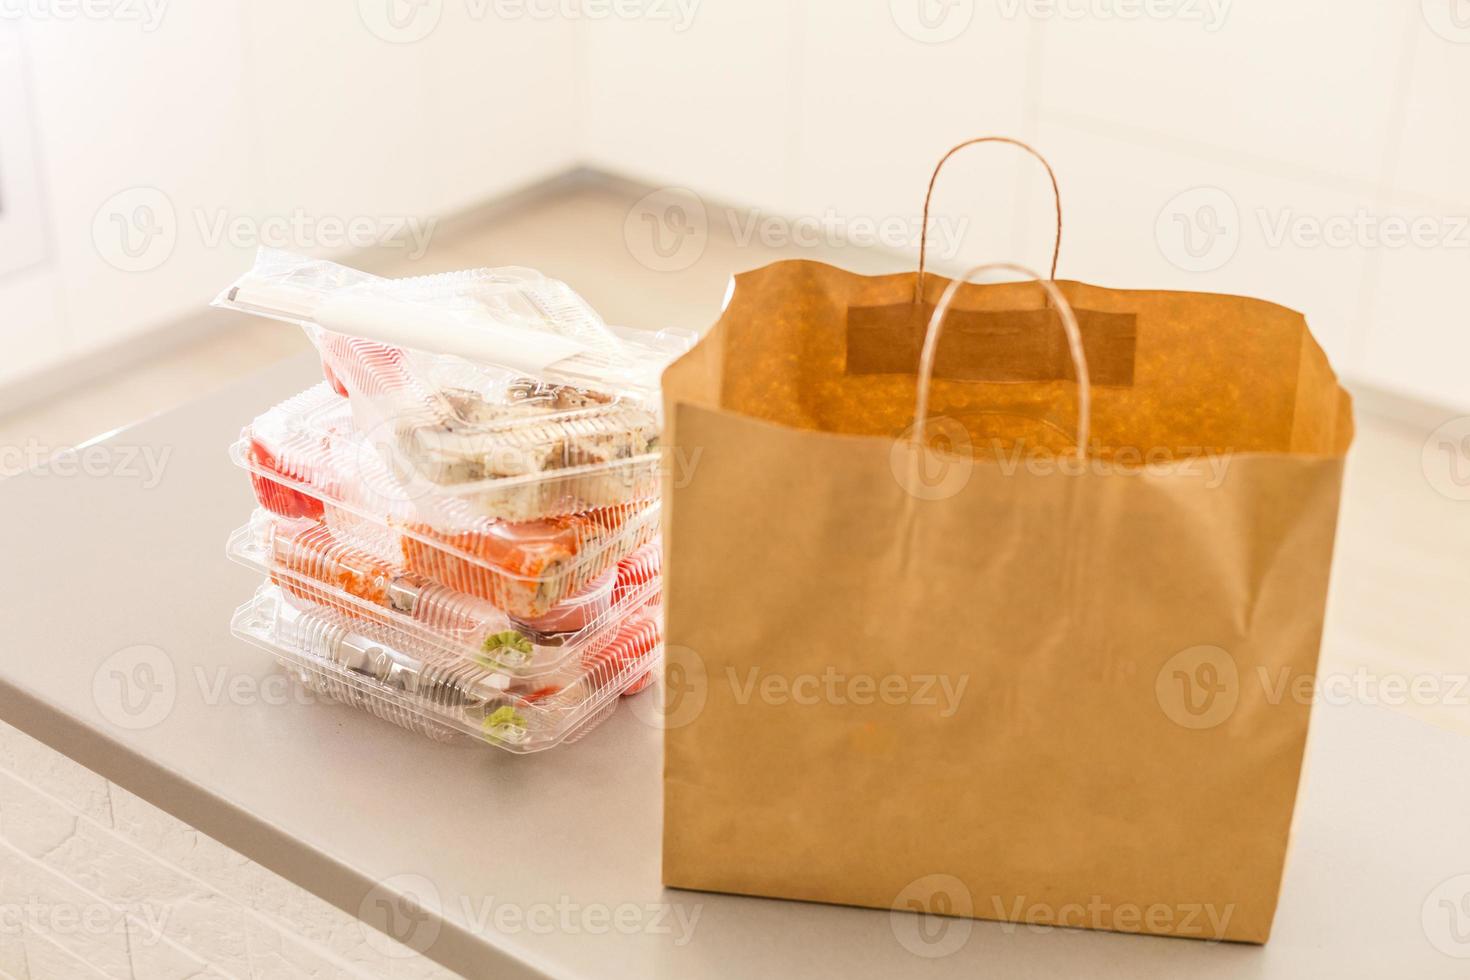 sushi broodjes in plastic doos in de buurt papier pakket Aan wit tafel. levering. nemen weg. foto